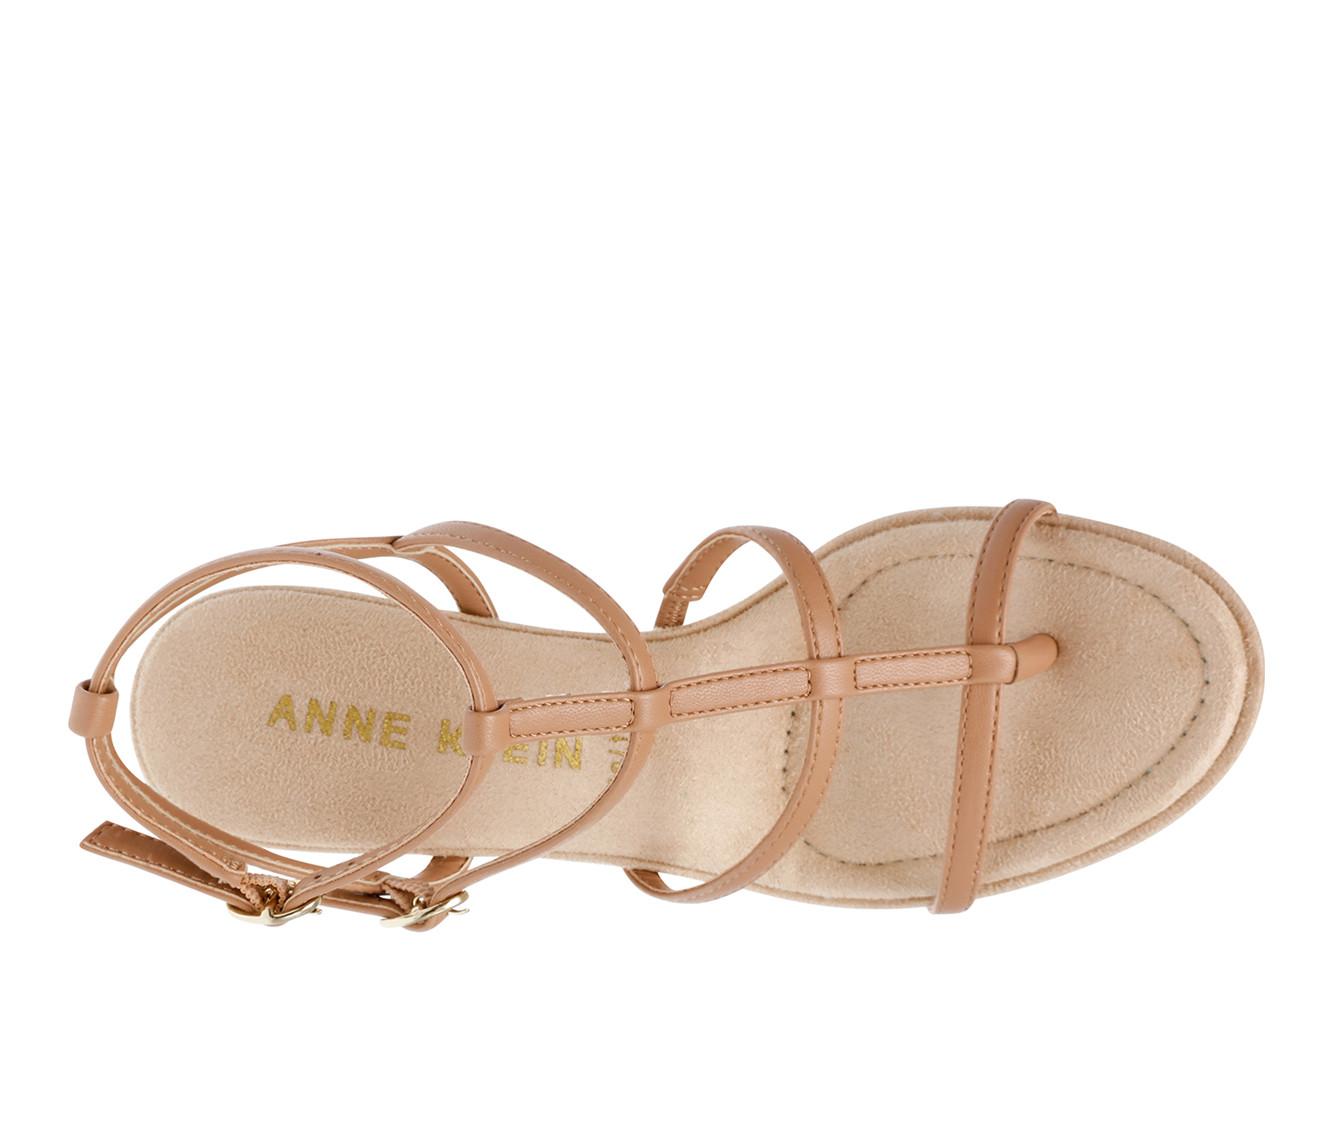 Women's Anne Klein Seville Wedge Sandals